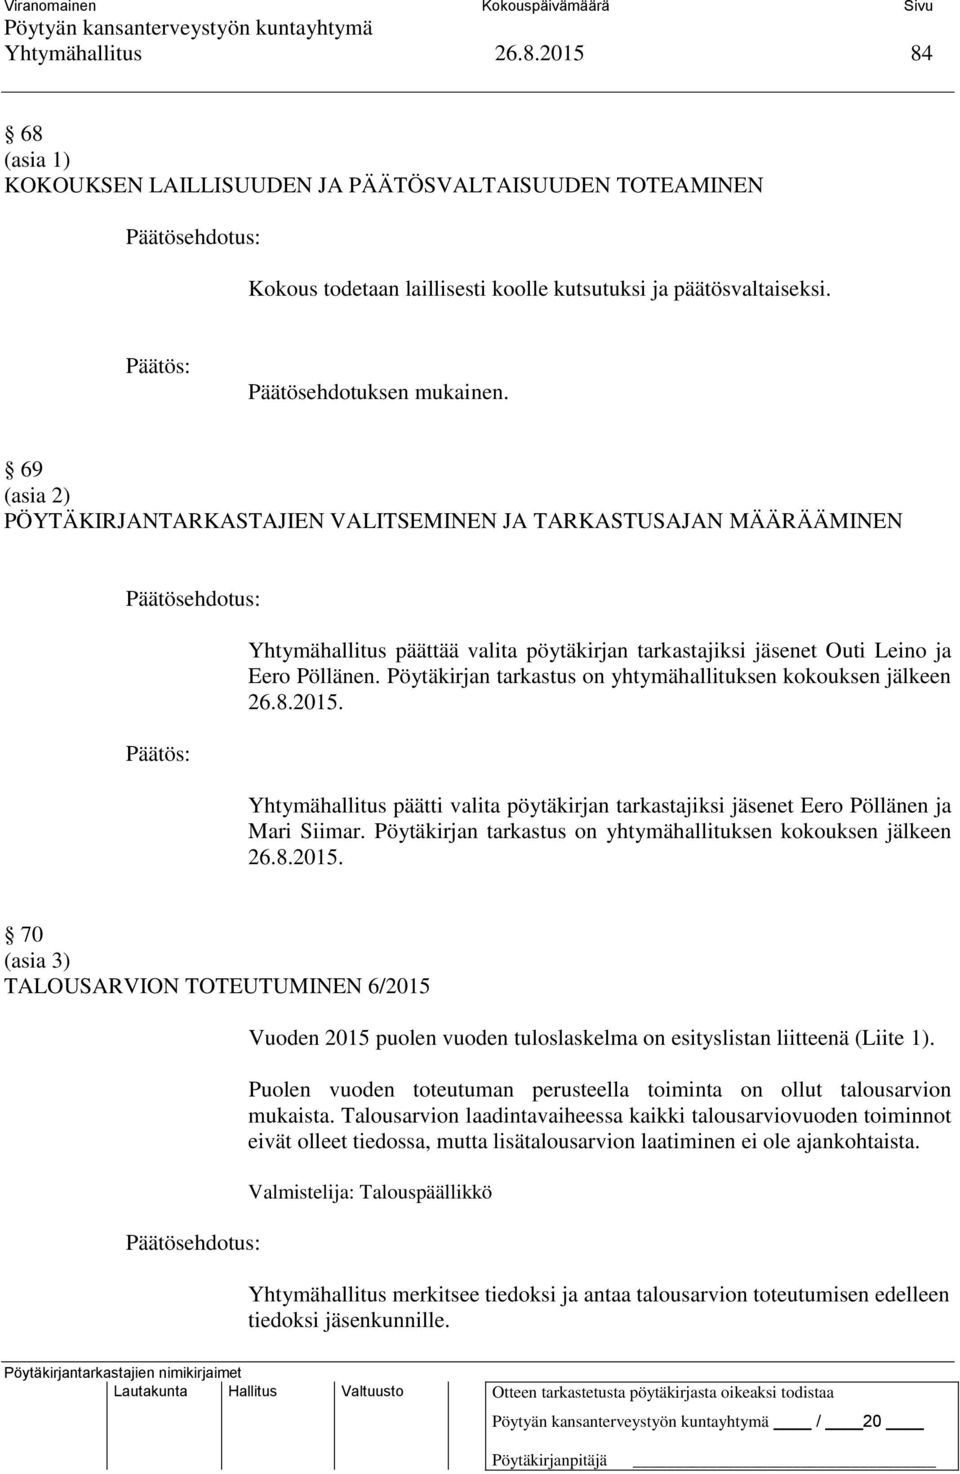 Pöytäkirjan tarkastus on yhtymähallituksen kokouksen jälkeen 26.8.2015. Yhtymähallitus päätti valita pöytäkirjan tarkastajiksi jäsenet Eero Pöllänen ja Mari Siimar.